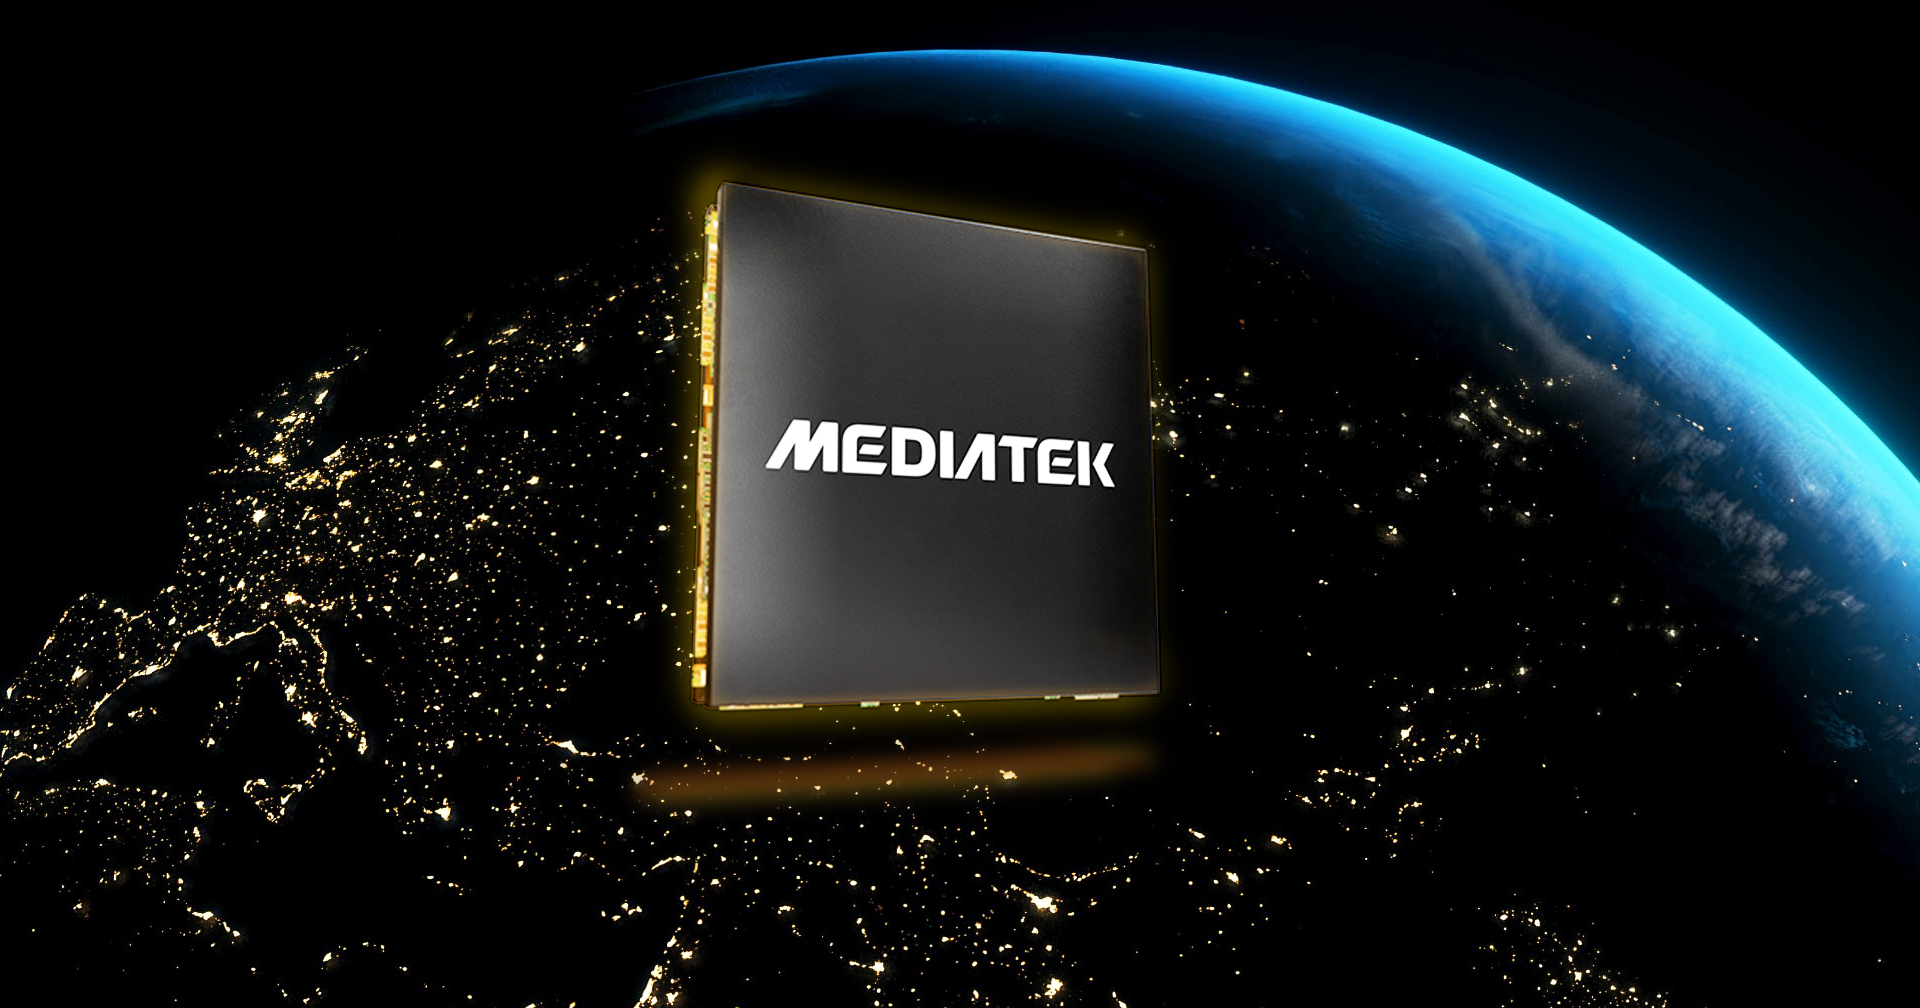 MediaTek เตรียมเปิดตัวระบบสื่อสารระหว่างดาวเทียม-สมาร์ตโฟน ในงาน MWC 2023